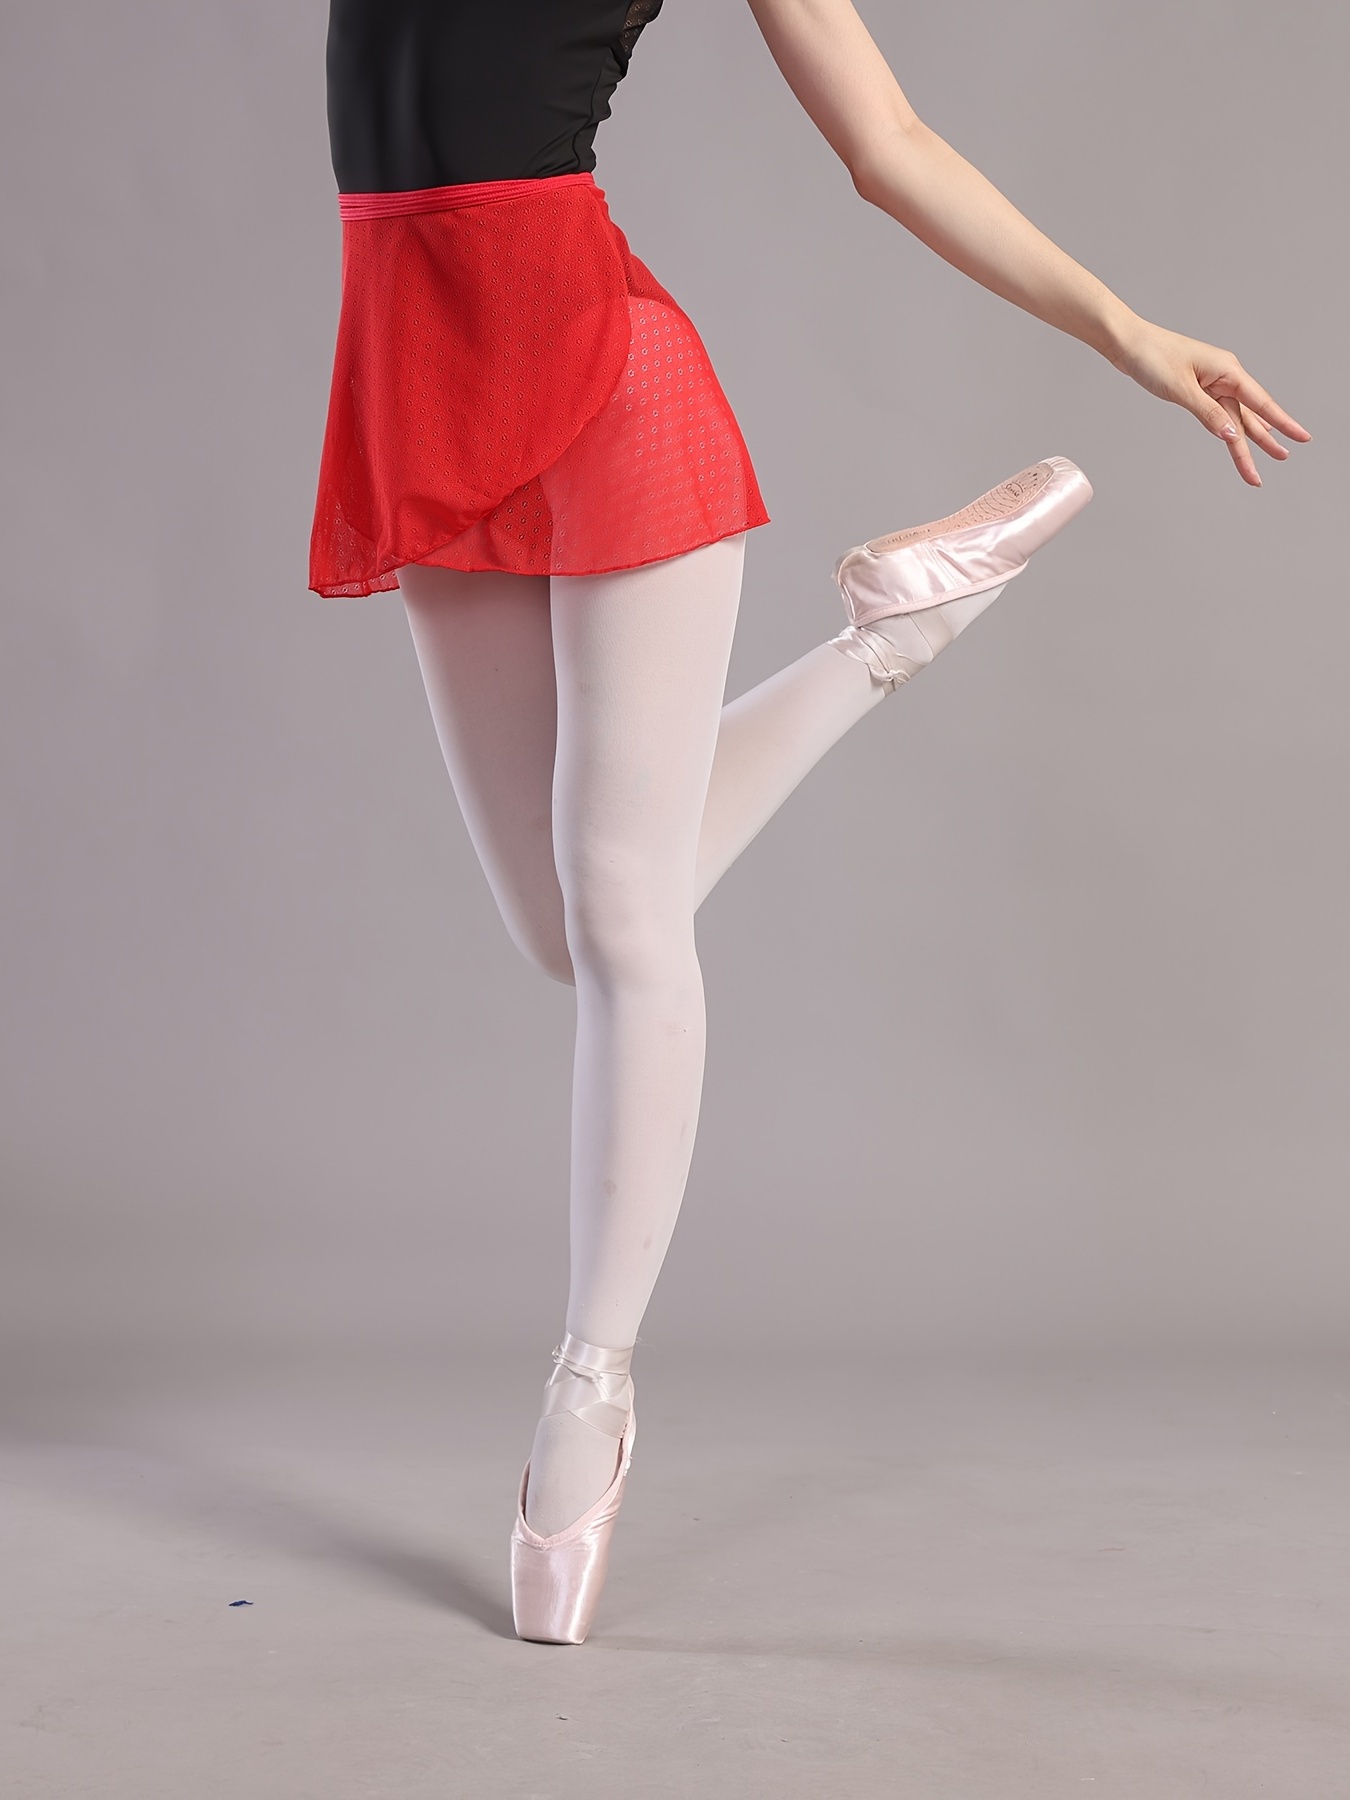  Dancina Dance Tights Big Girls Tweens Ballet Dance